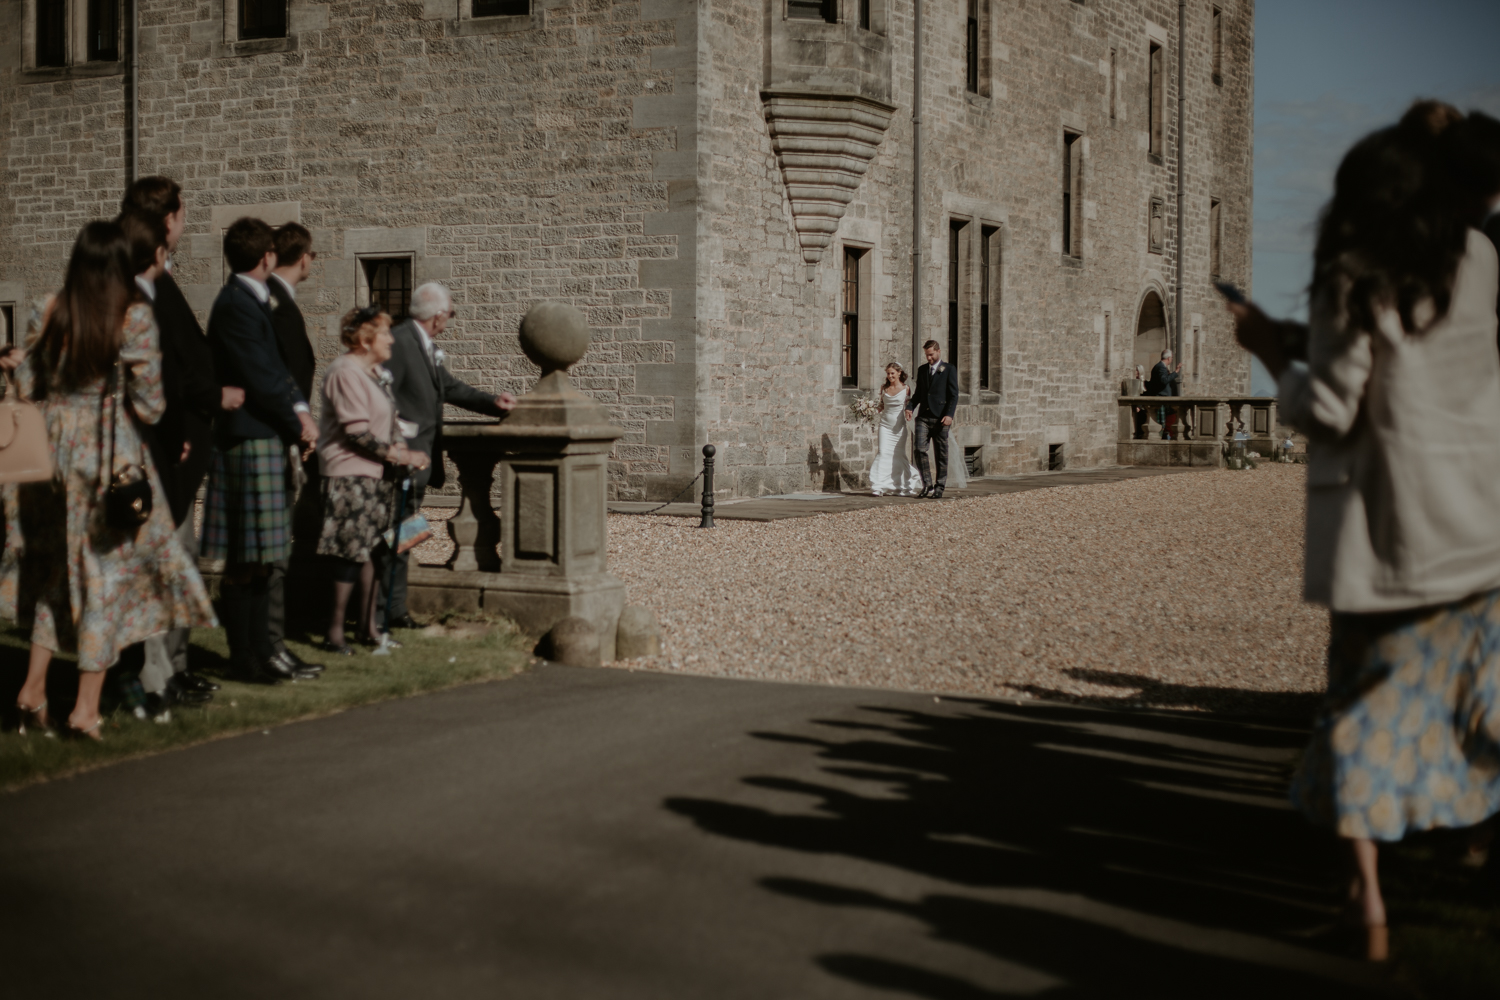 Barnbougle Castle Wedding Photographer